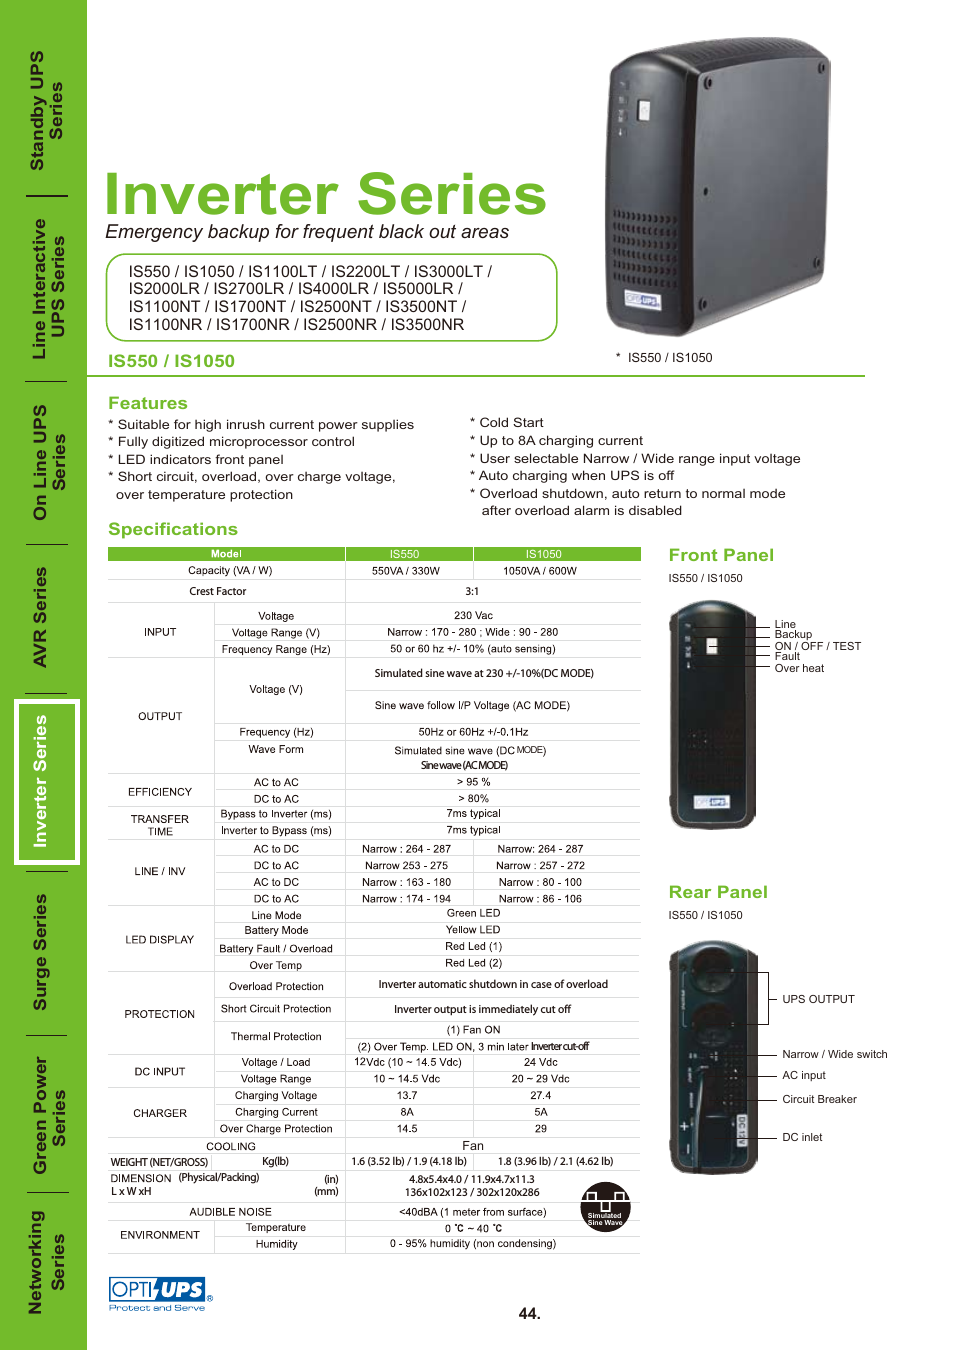 Inverter Series IS1100NT